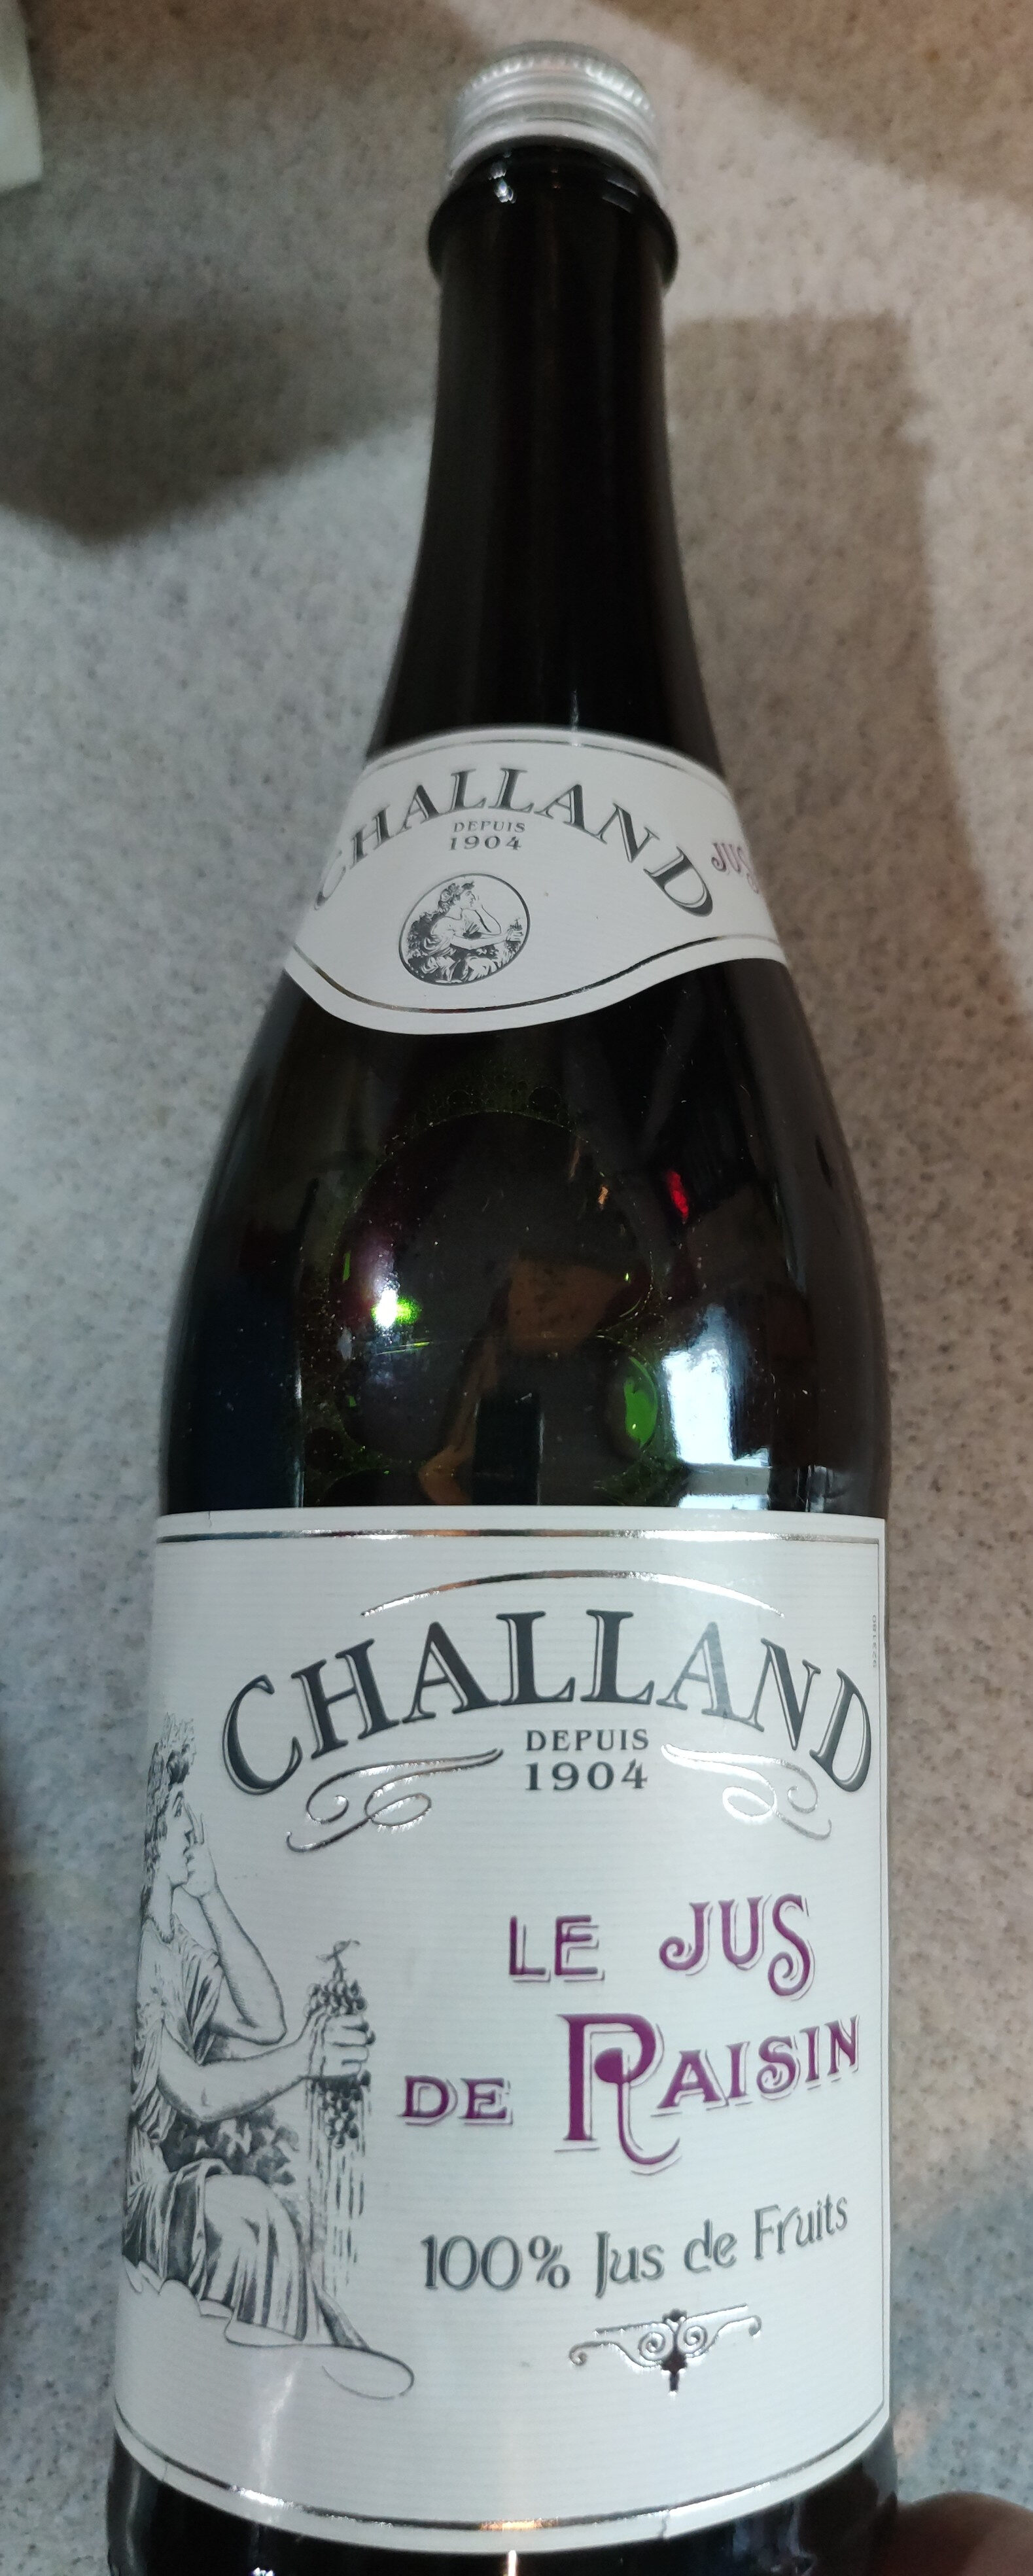 Vin de Chailland - Product - fr